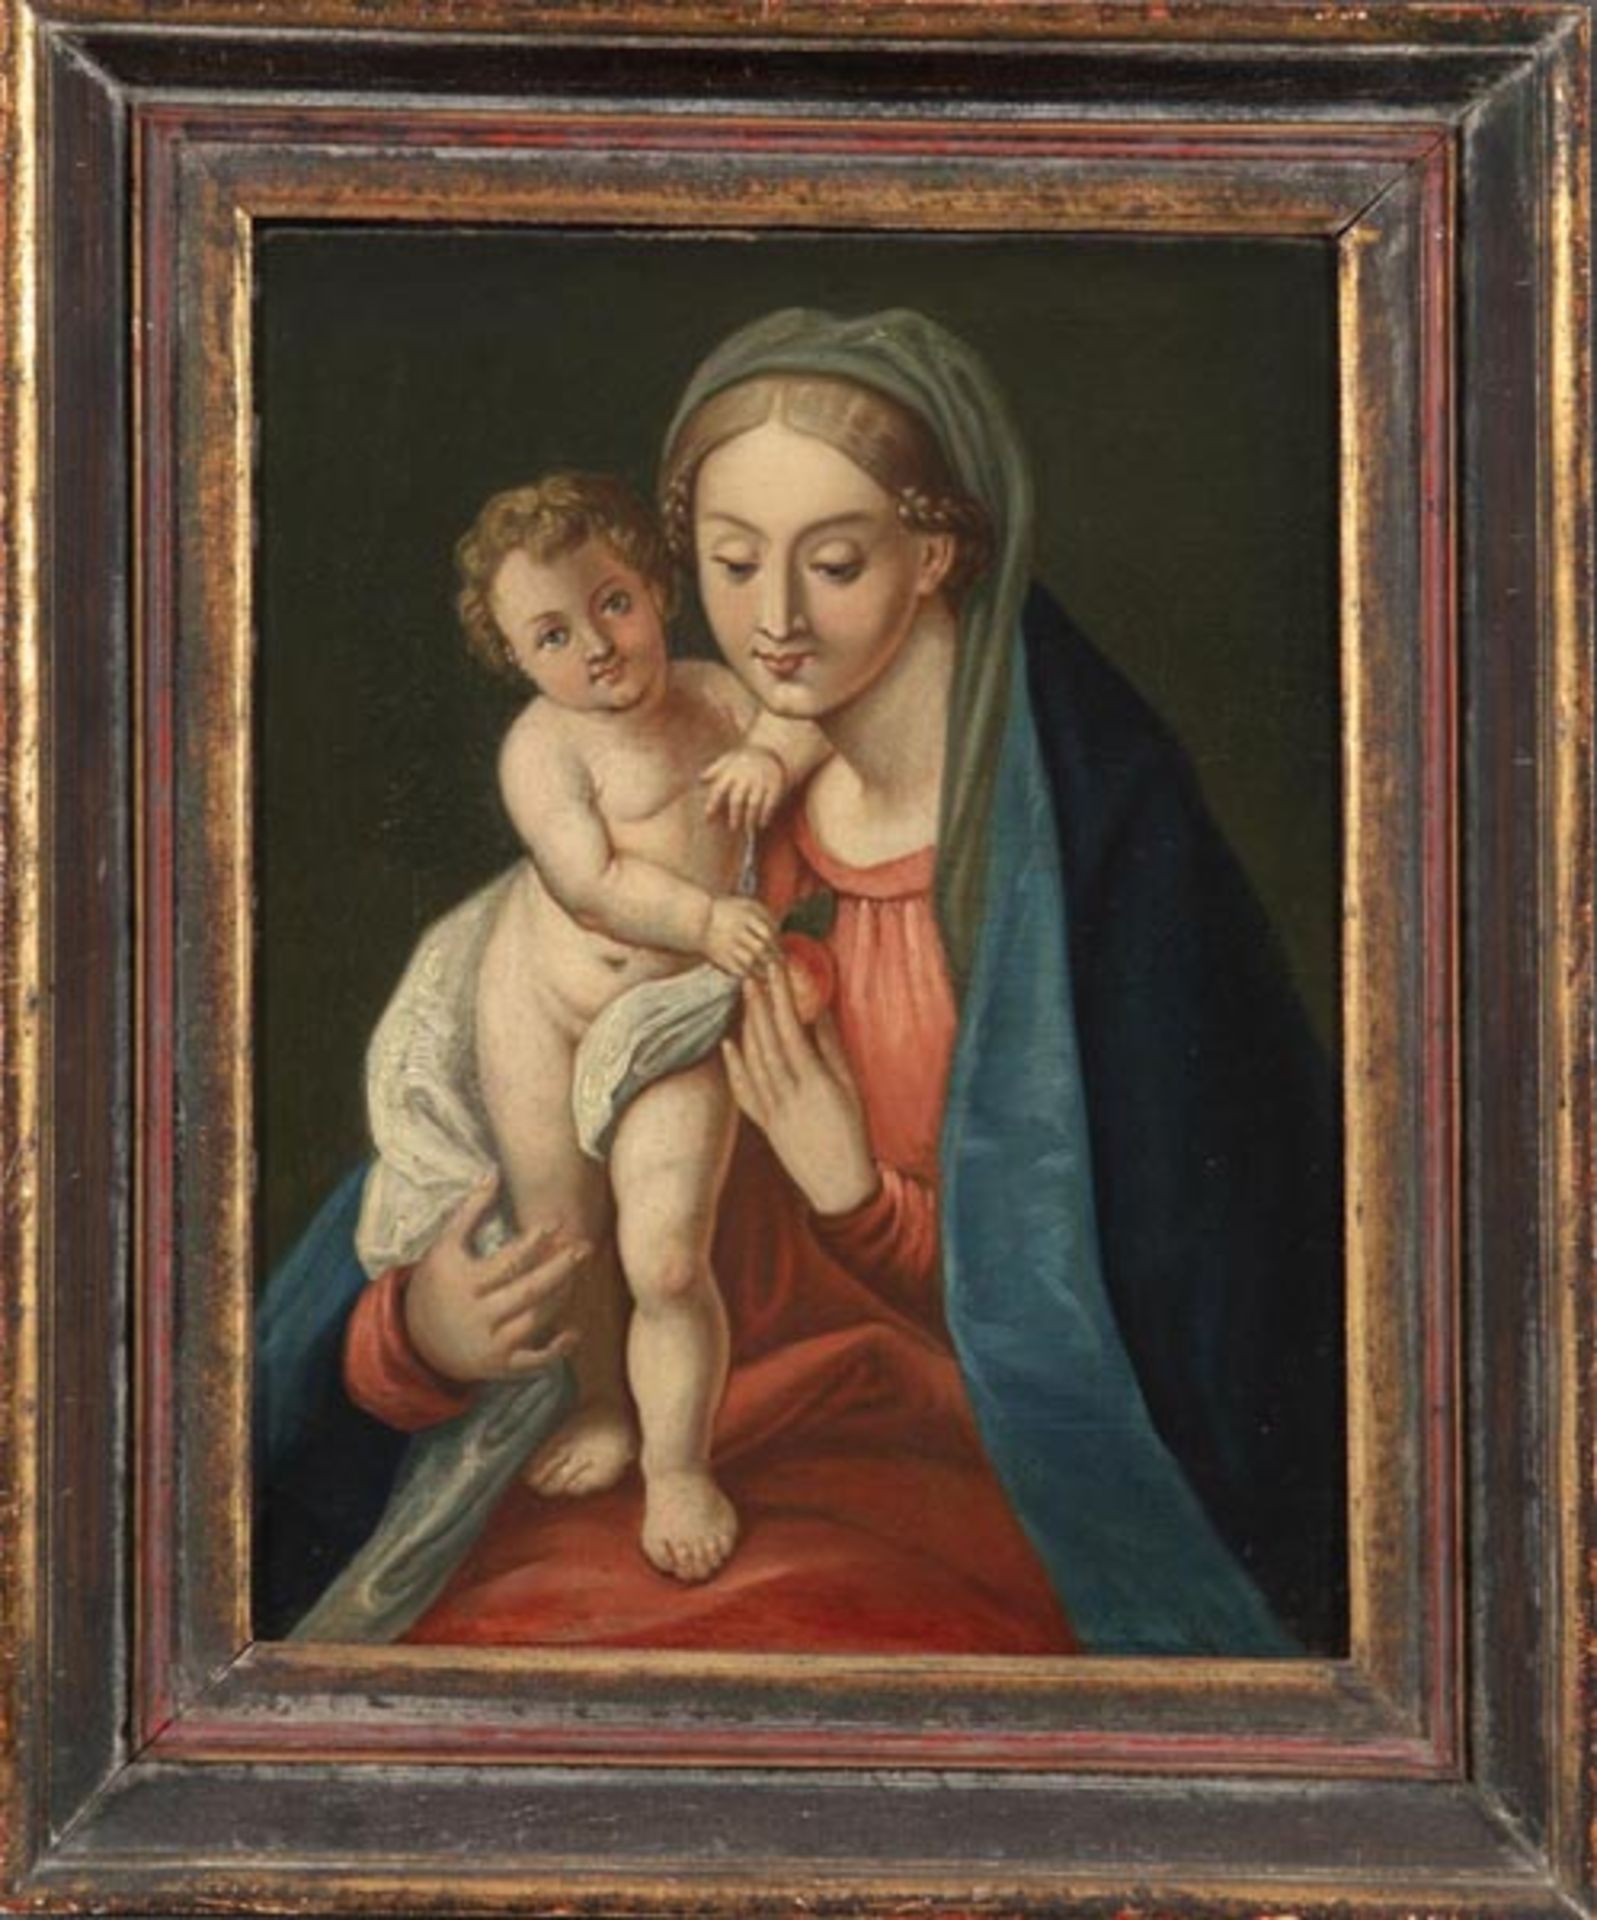 Wohl Italienischer Maler des 18. Jhs. Madonna mit Kind. Öl/Lw., aufgezogen, 46 x 35 cm.